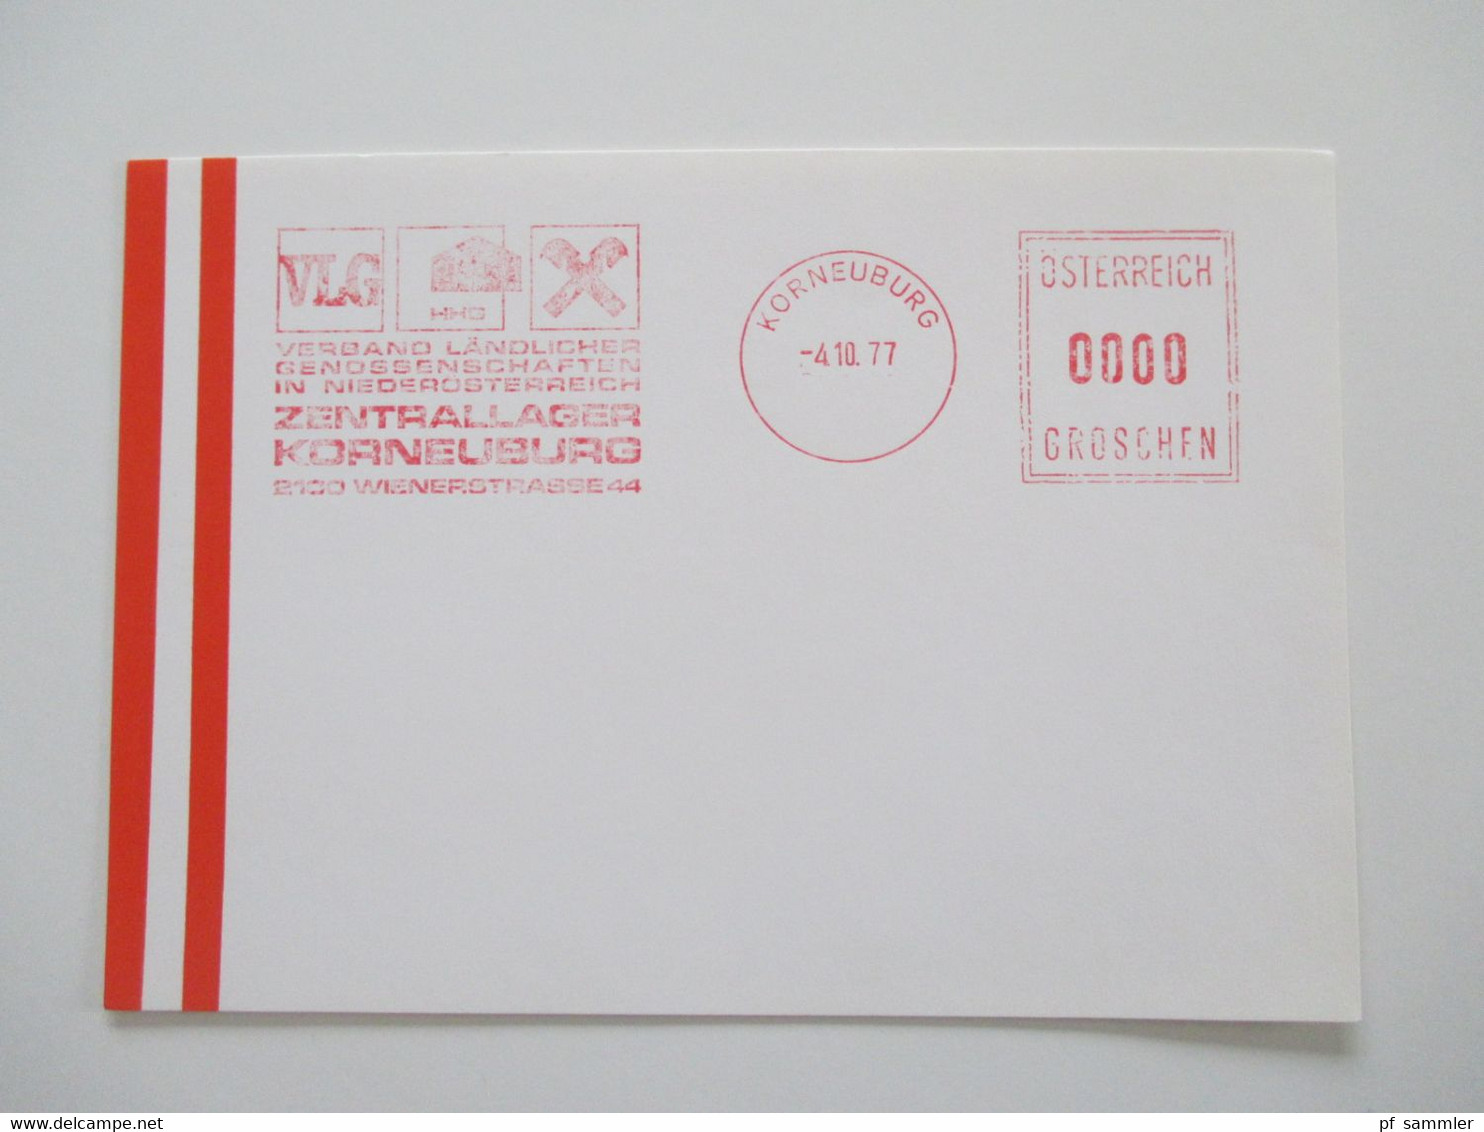 Österreich 1976 - 78 Freistempel Mit Wert 0000 Groschen Insgesamt 29 Stempelbelege / Blanko Karten Alles Verschiedene St - Storia Postale